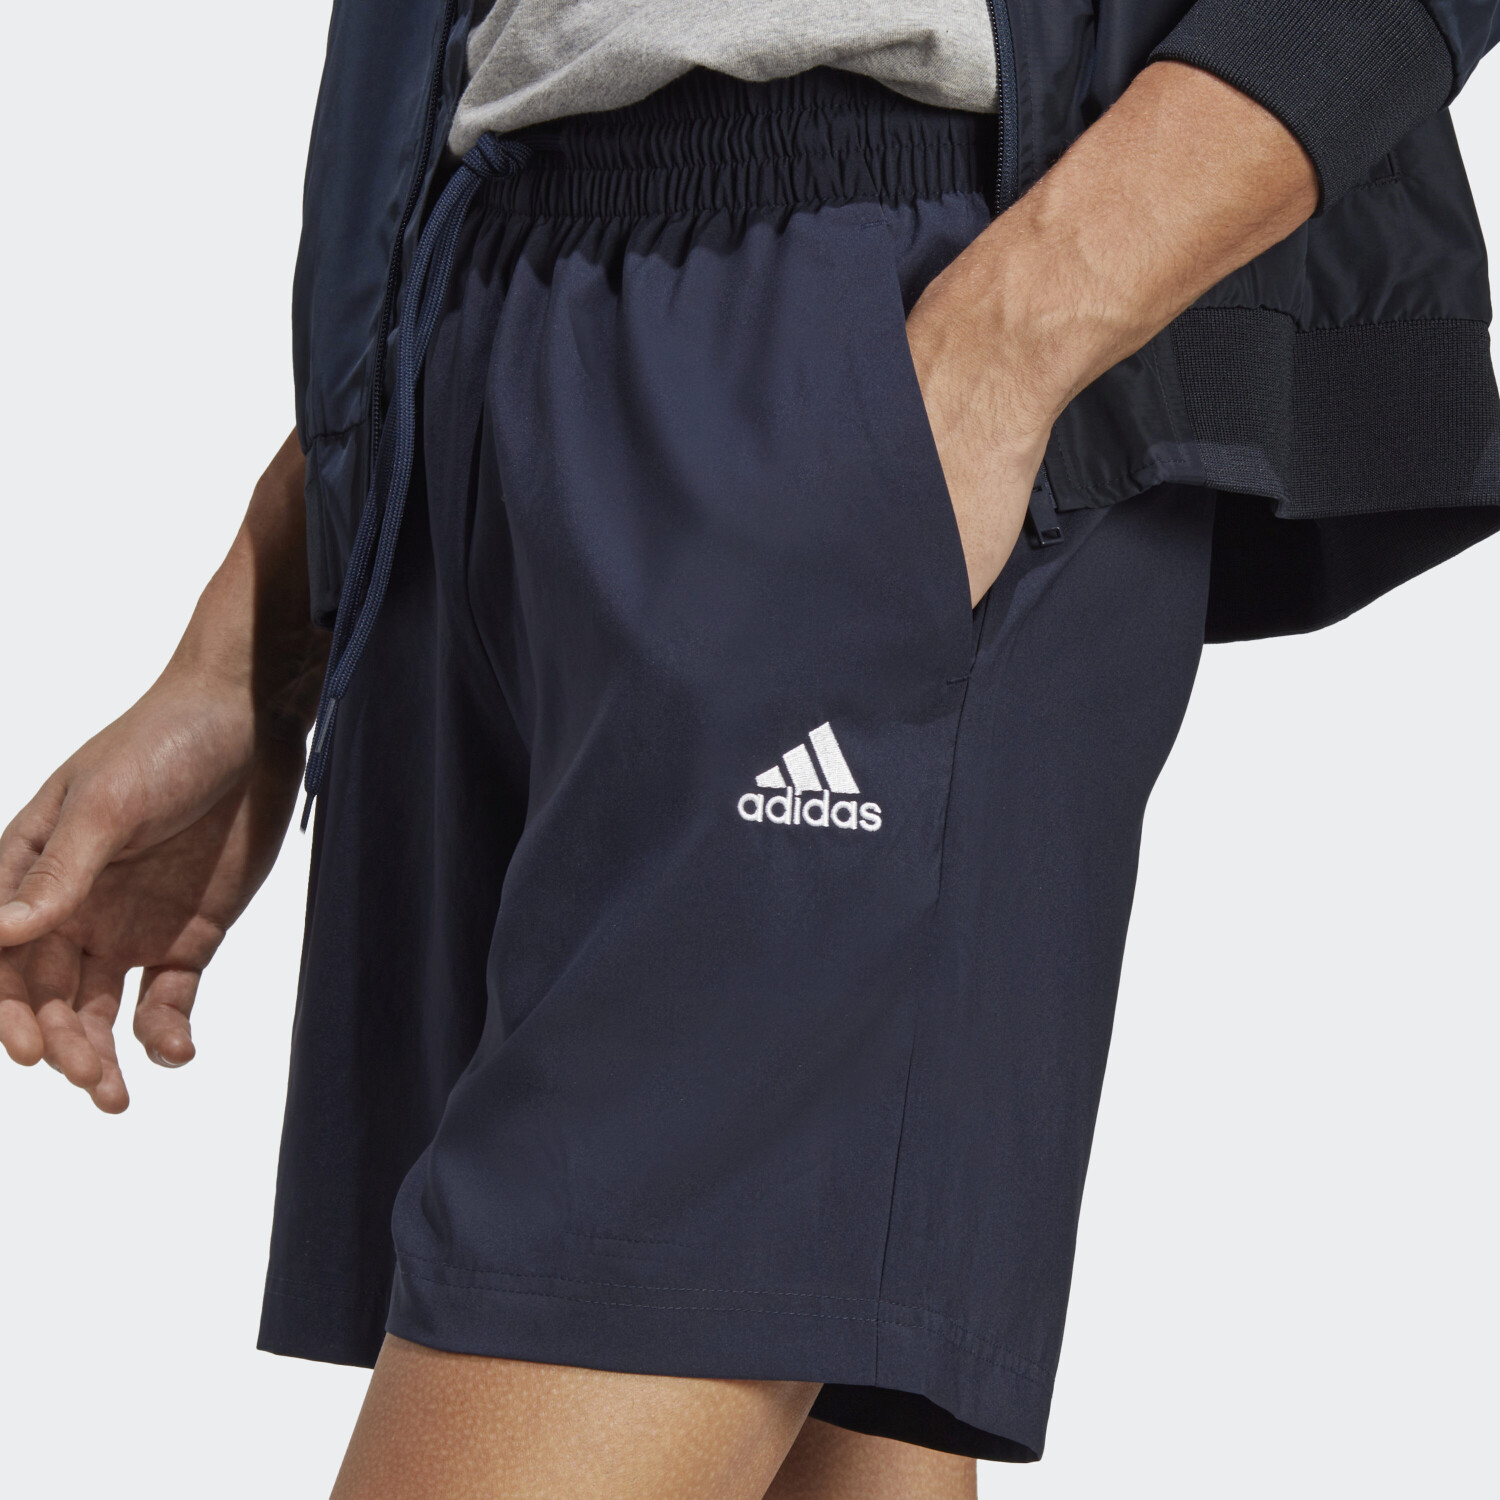 Essentials Chelsea ab Shorts Preisvergleich Adidas Small Herren Short 17,99 | ink Logo legend bei €